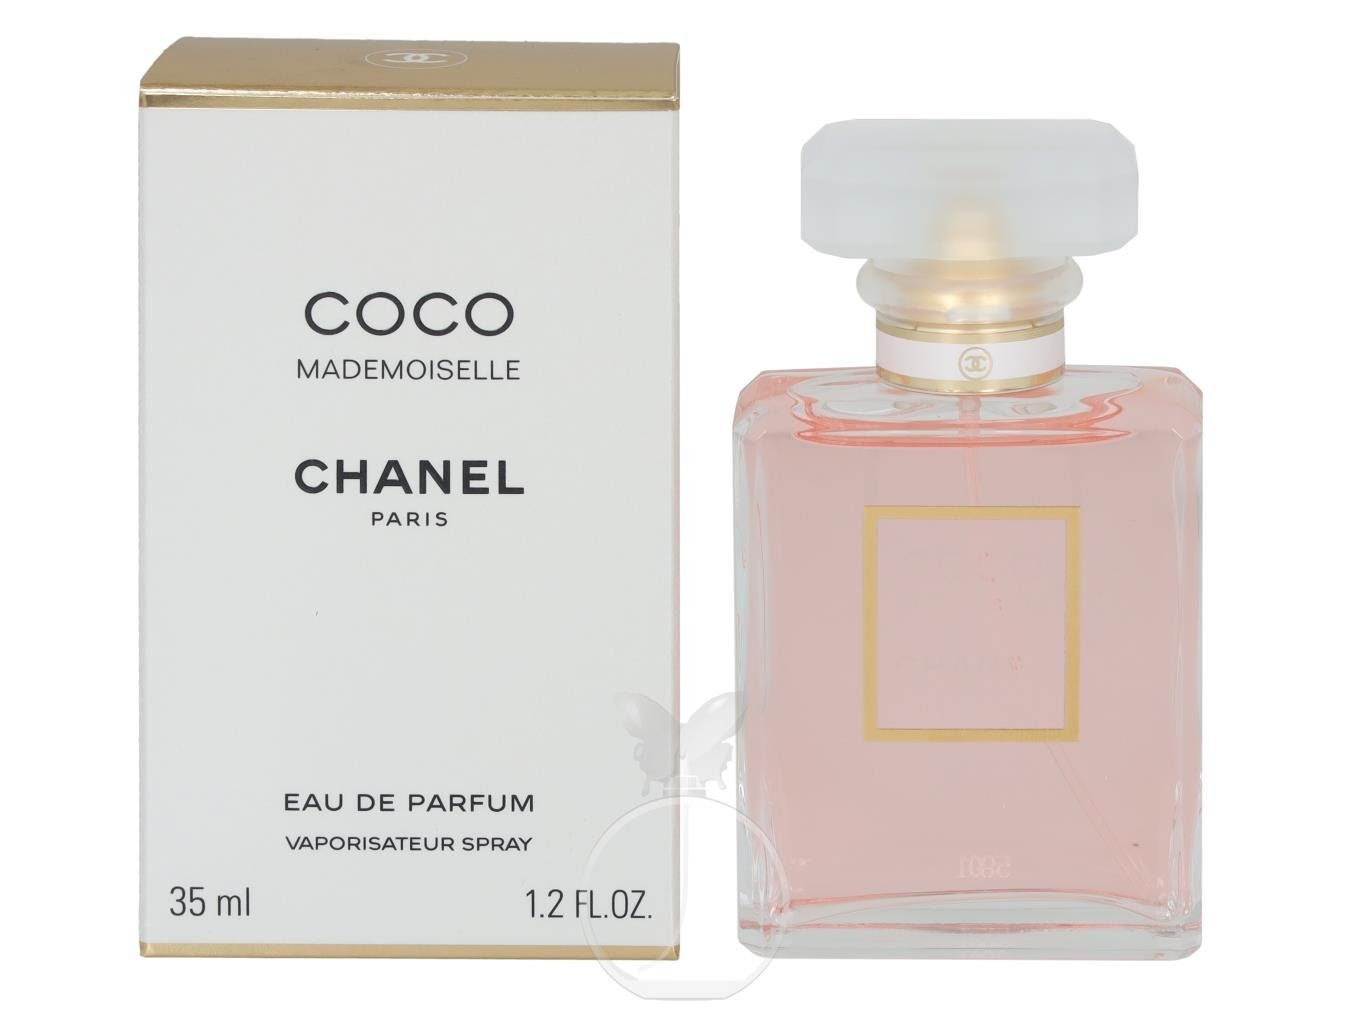 1-tlg. de CHANEL Mademoiselle Eau Parfum Eau de ml, Chanel Coco Parfum 35